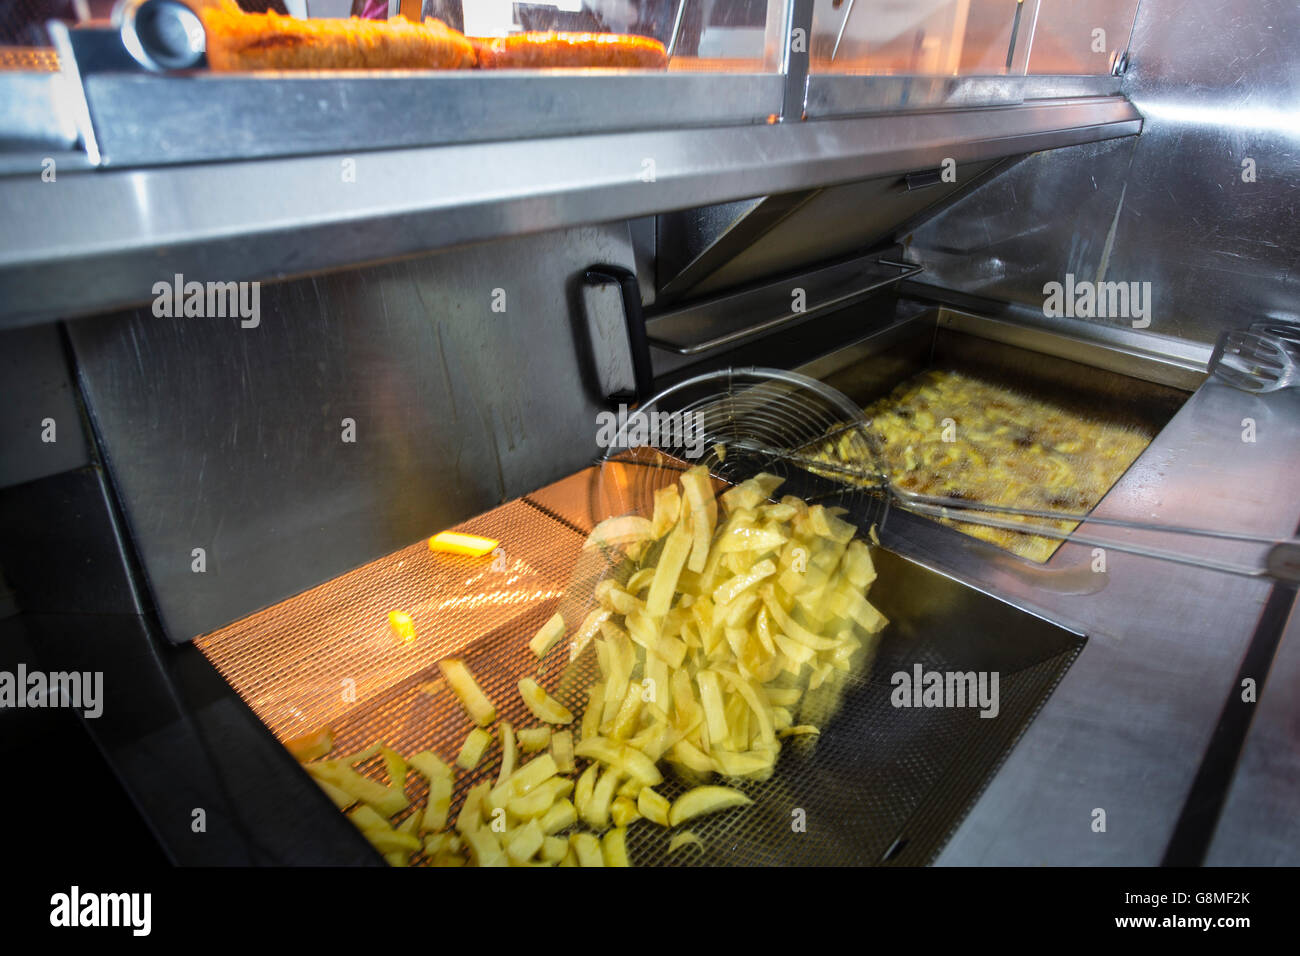 La cottura di chip in un pesce e chip shop con pentole di grasso bollente, adnd un chip scoop. Foto Stock